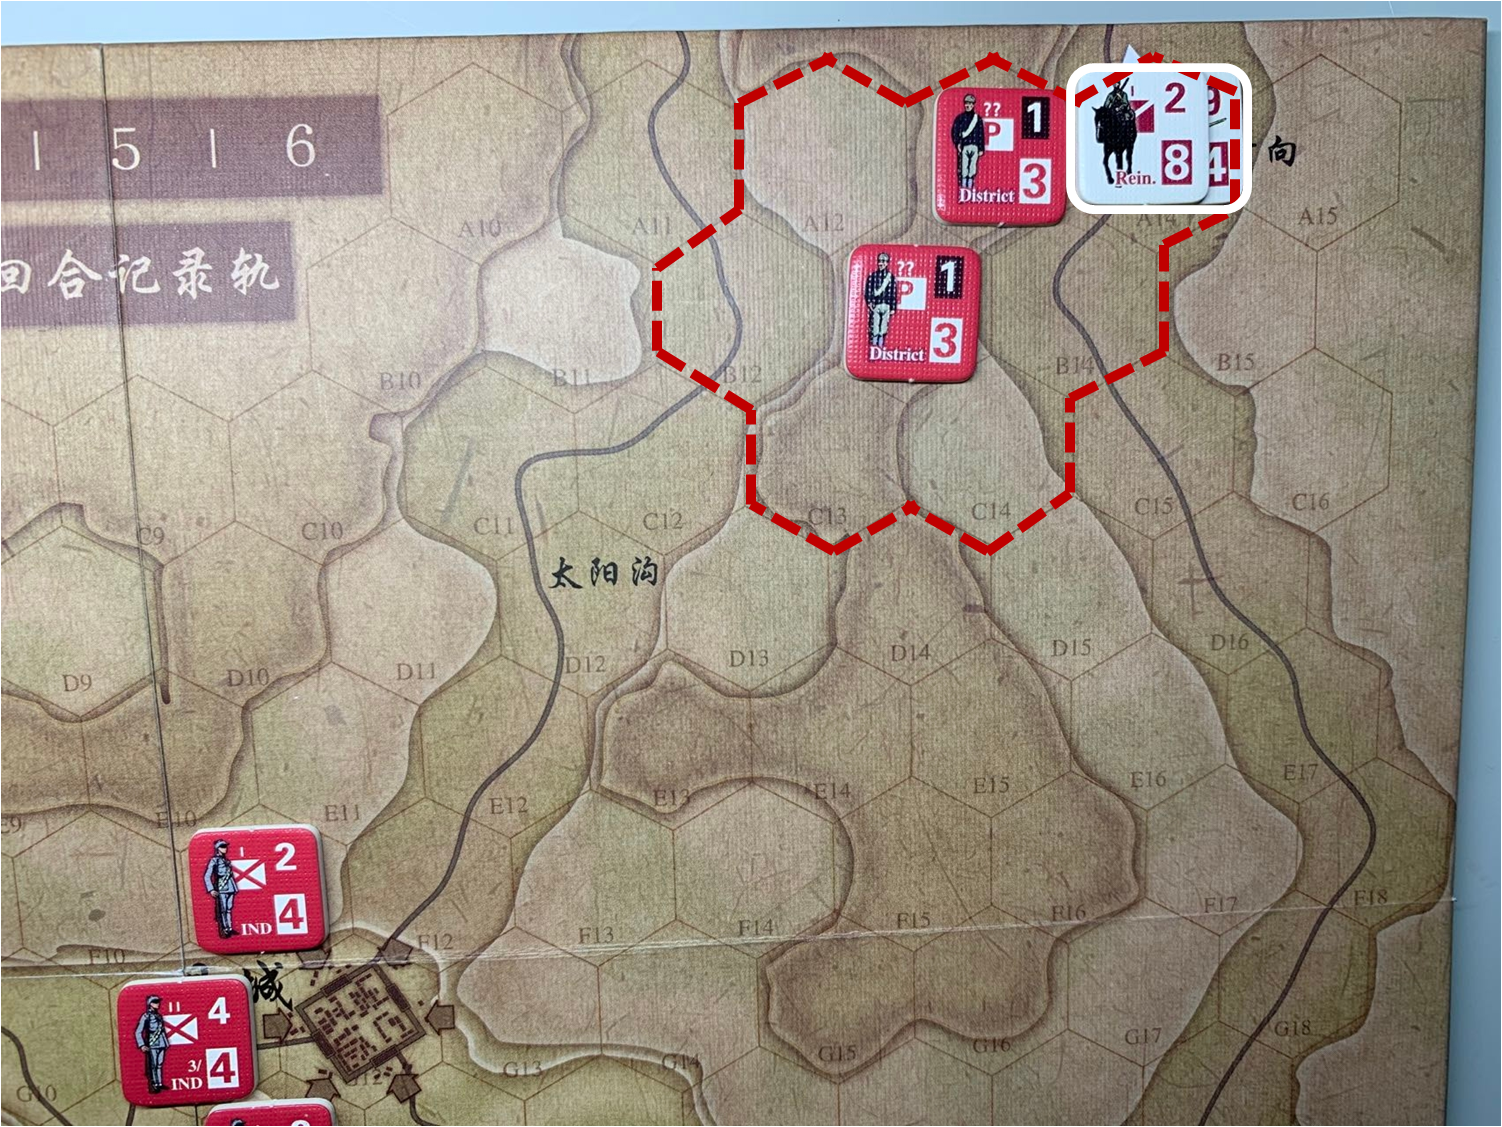 第一回合省城方向（A14）日军增援部队对于移动命令2的执行计划与结果